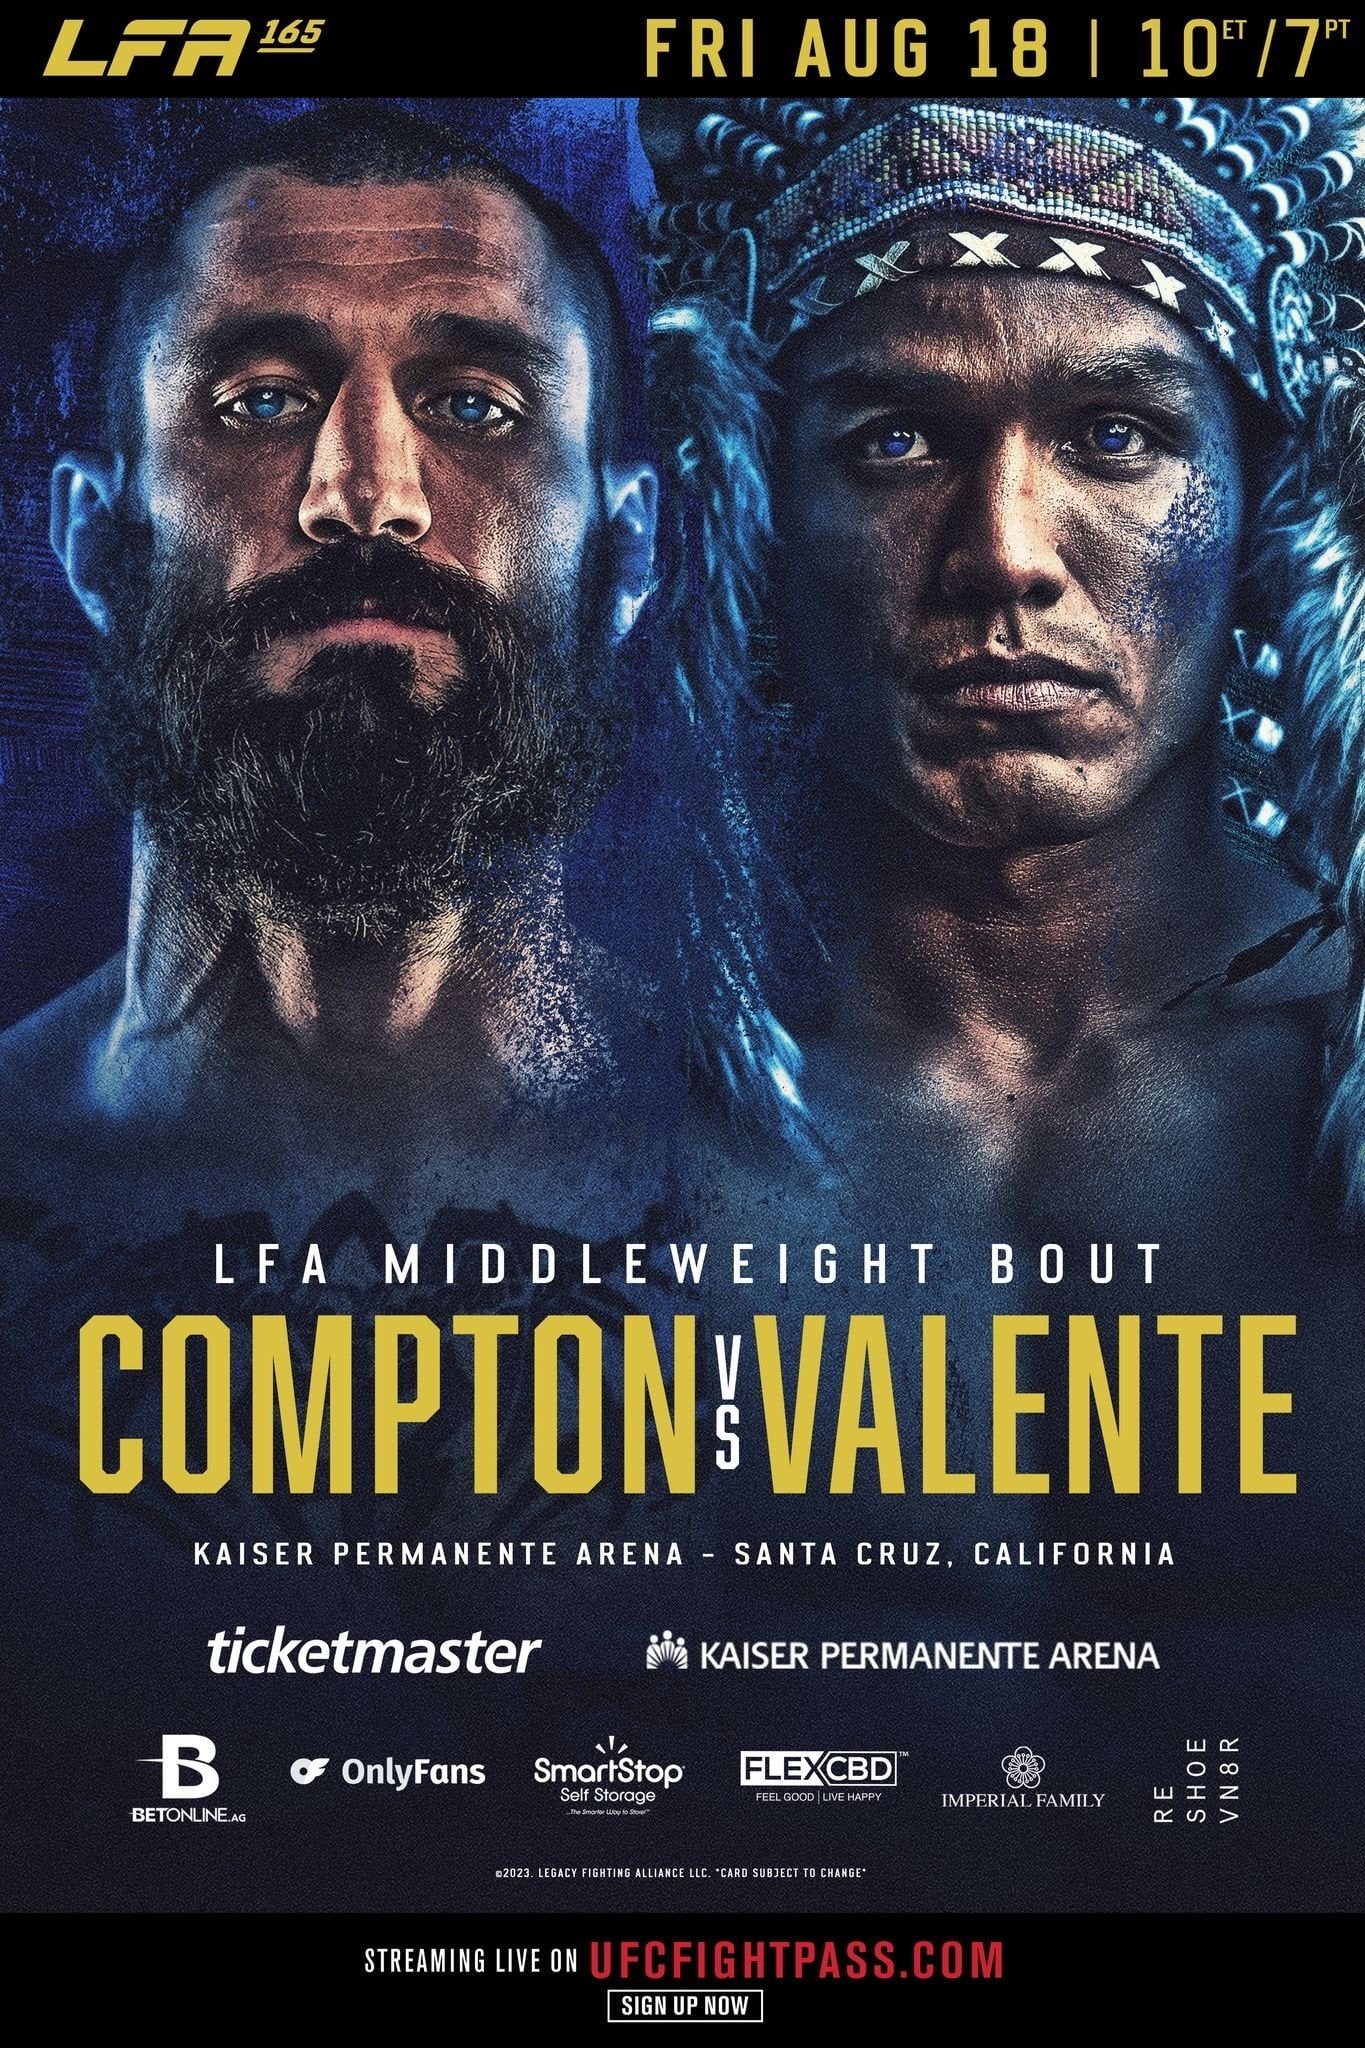 LFA 165: Compton vs. Valente